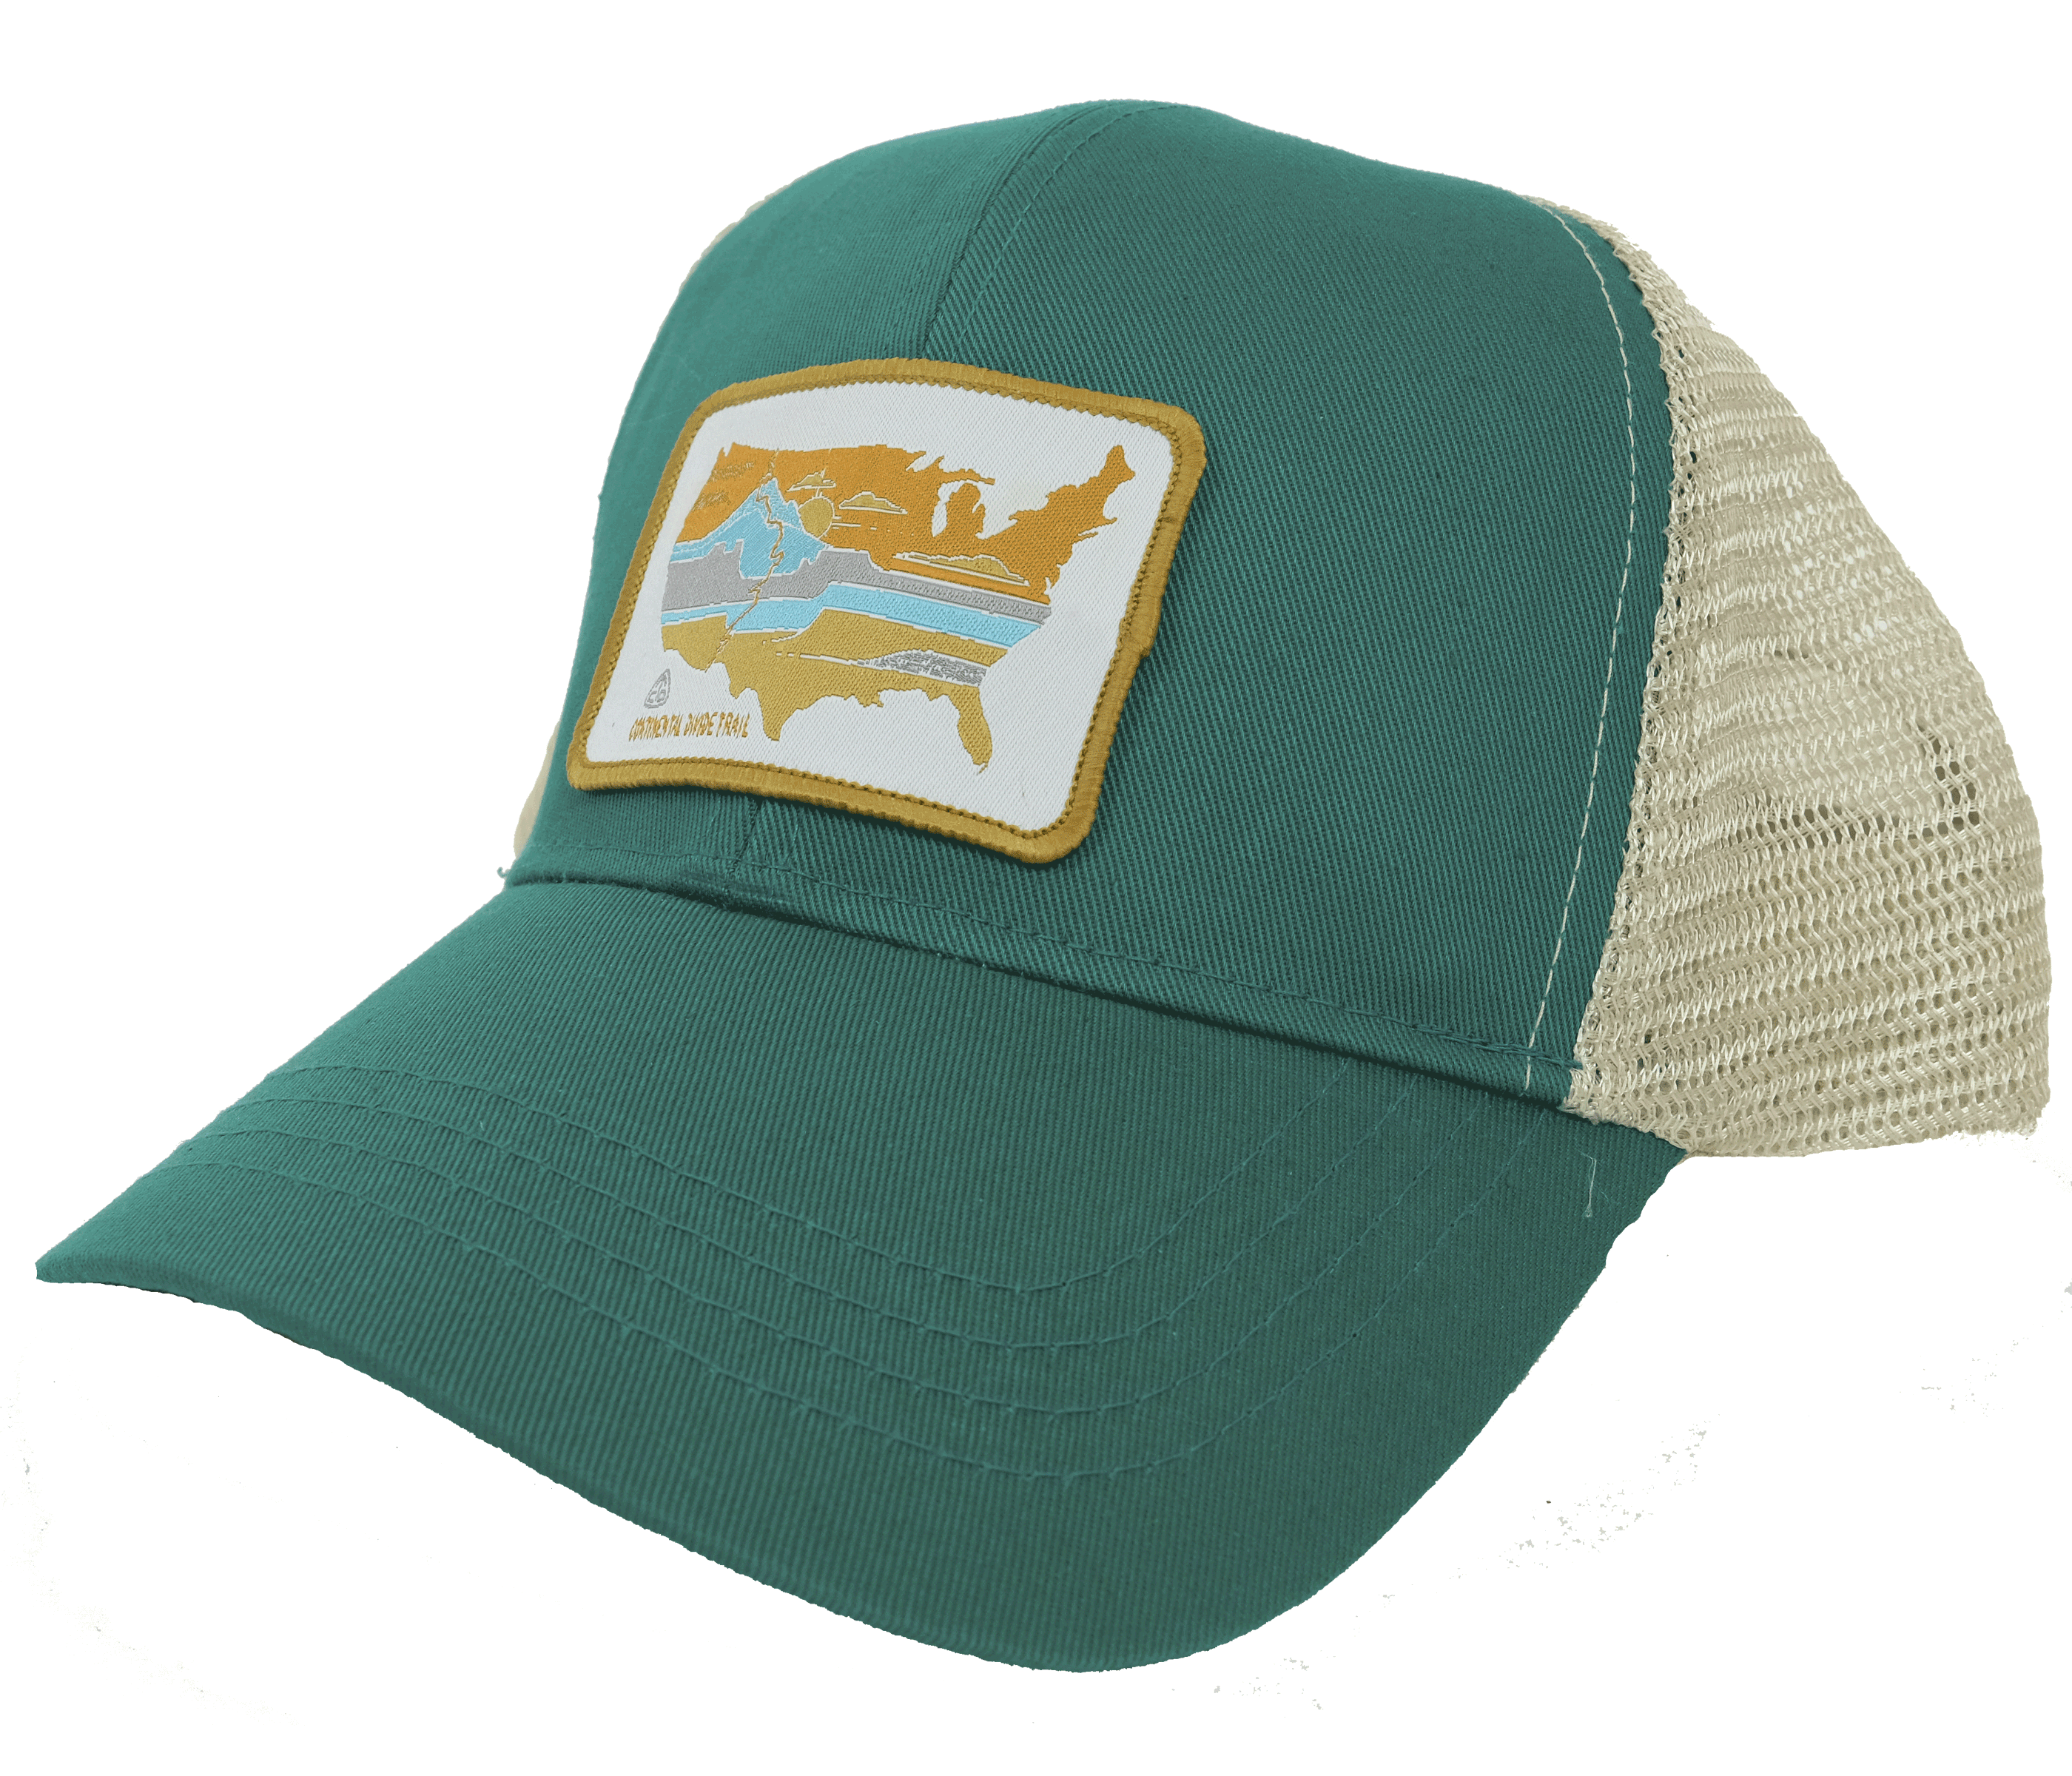 Continental Divide Trail CDT trucker hat